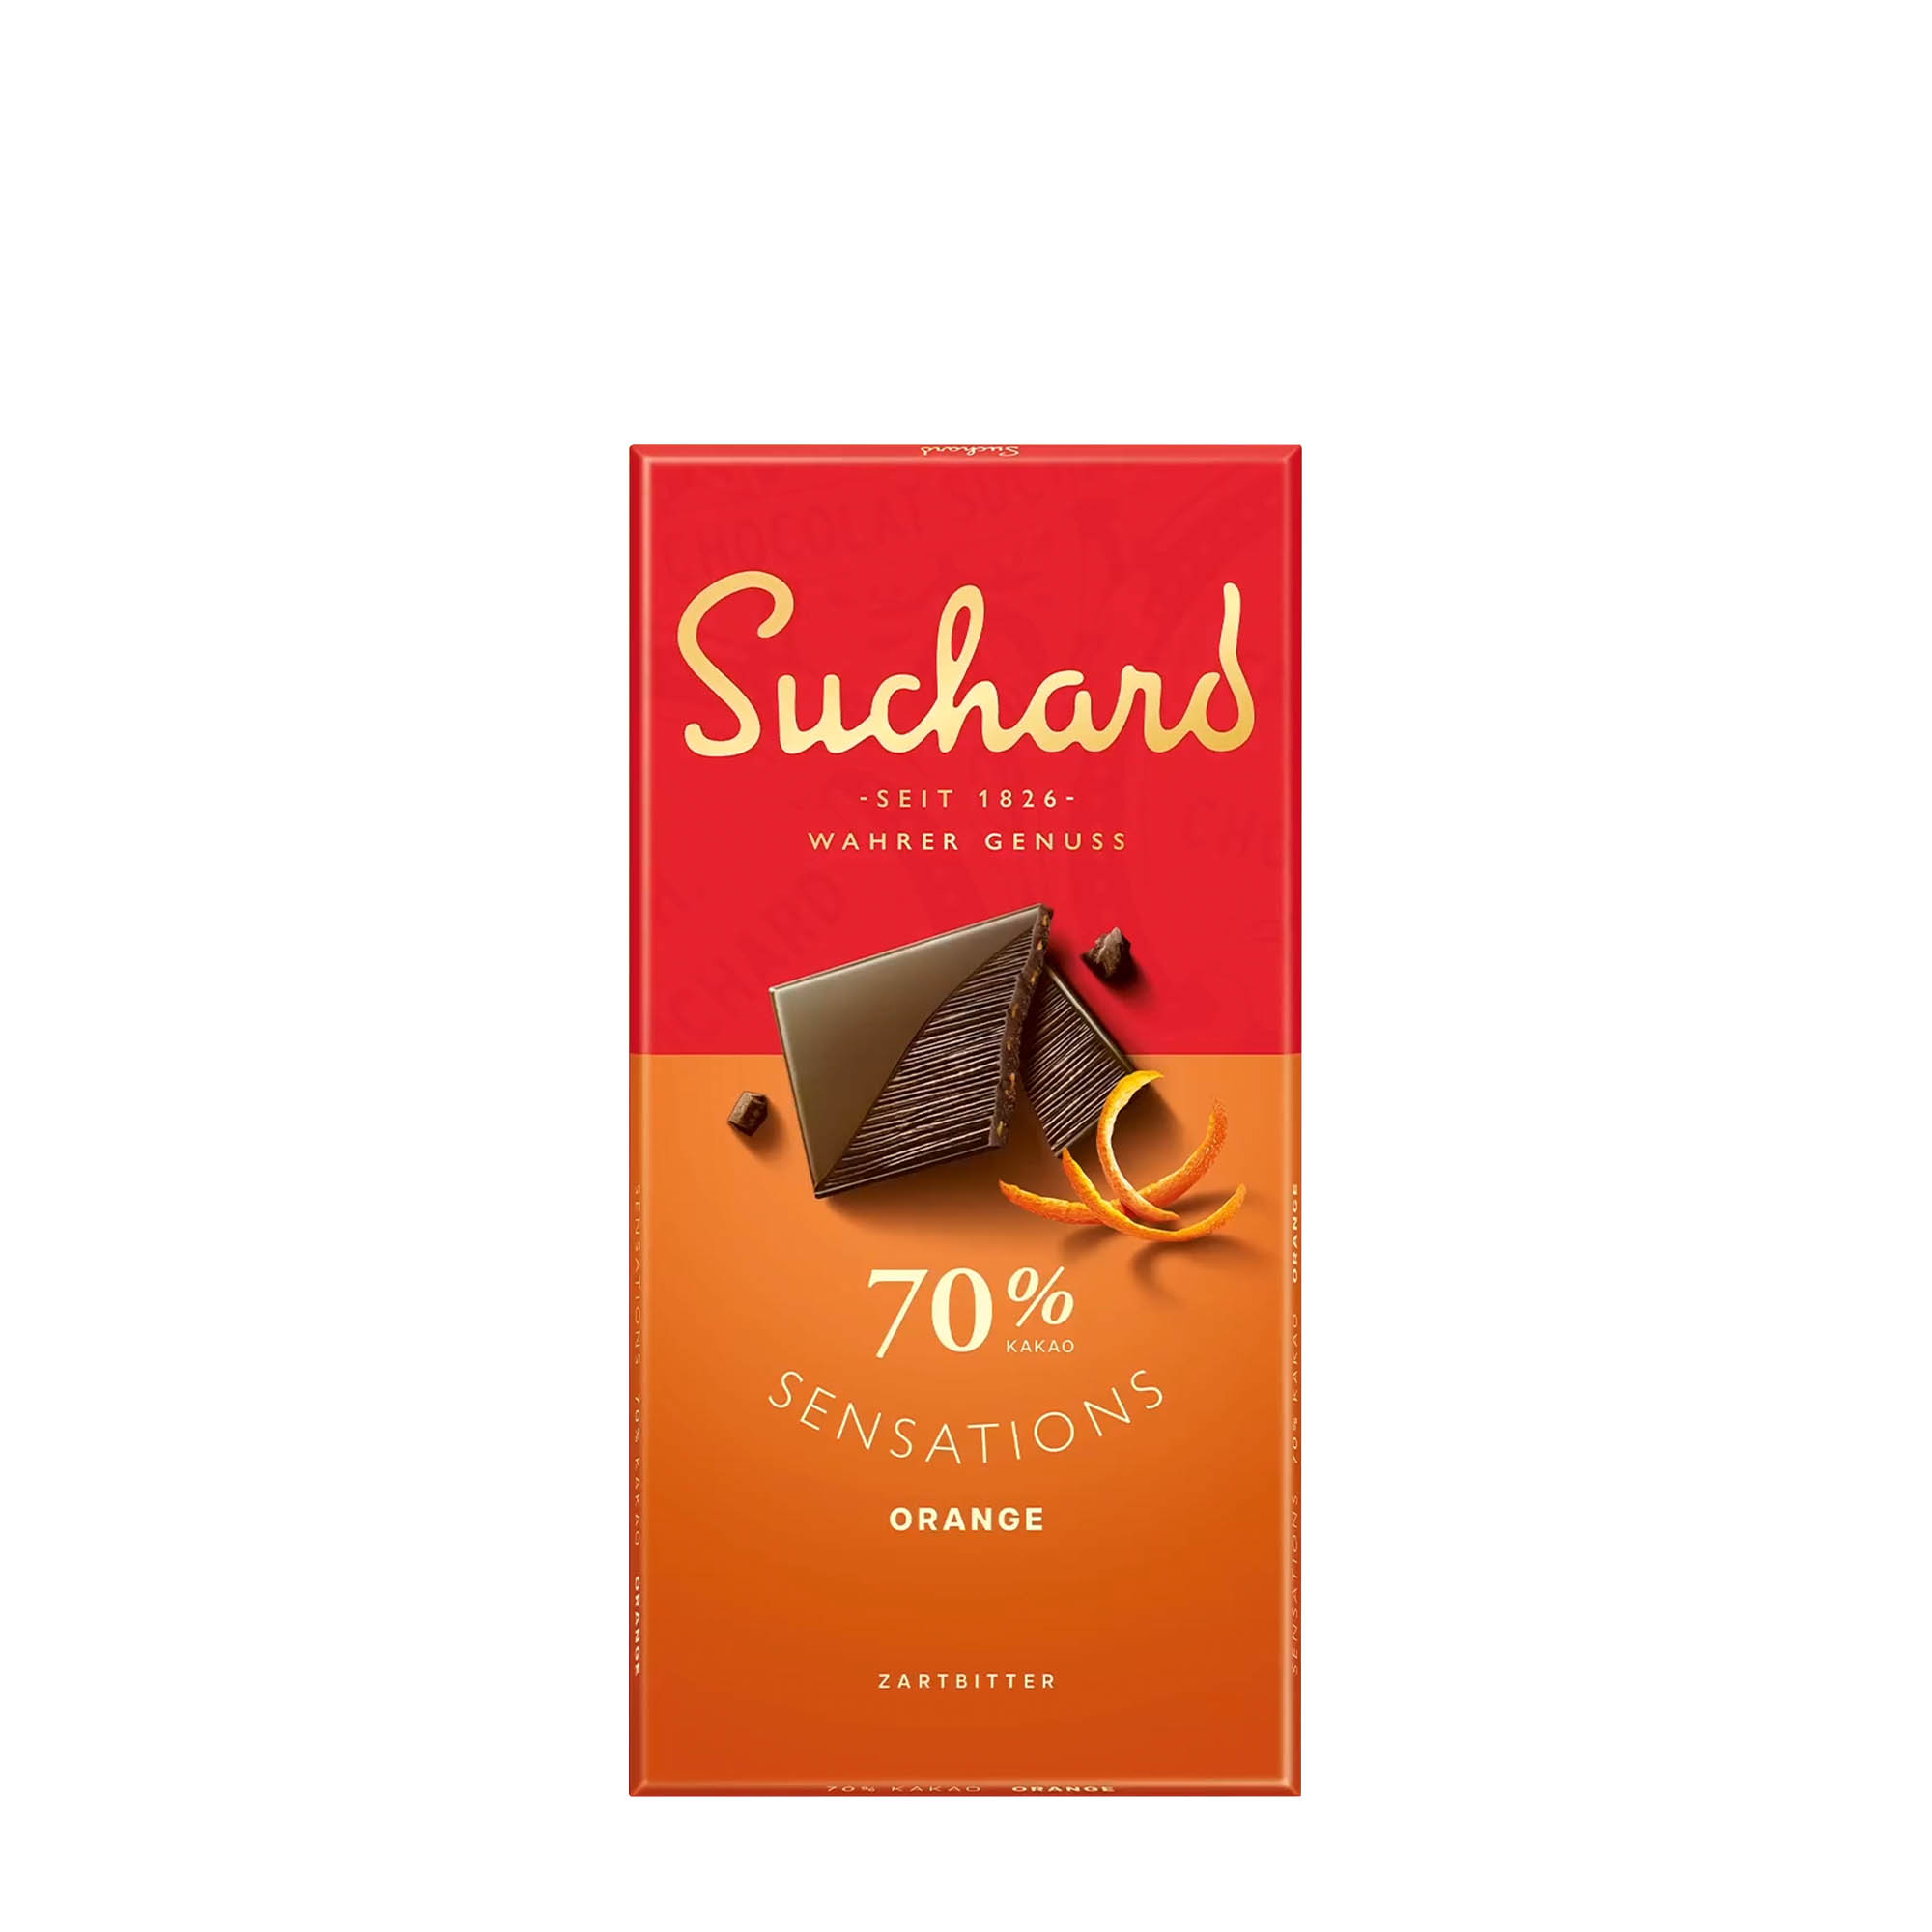 suchard dark chocolate bar sensations orange dark 70%